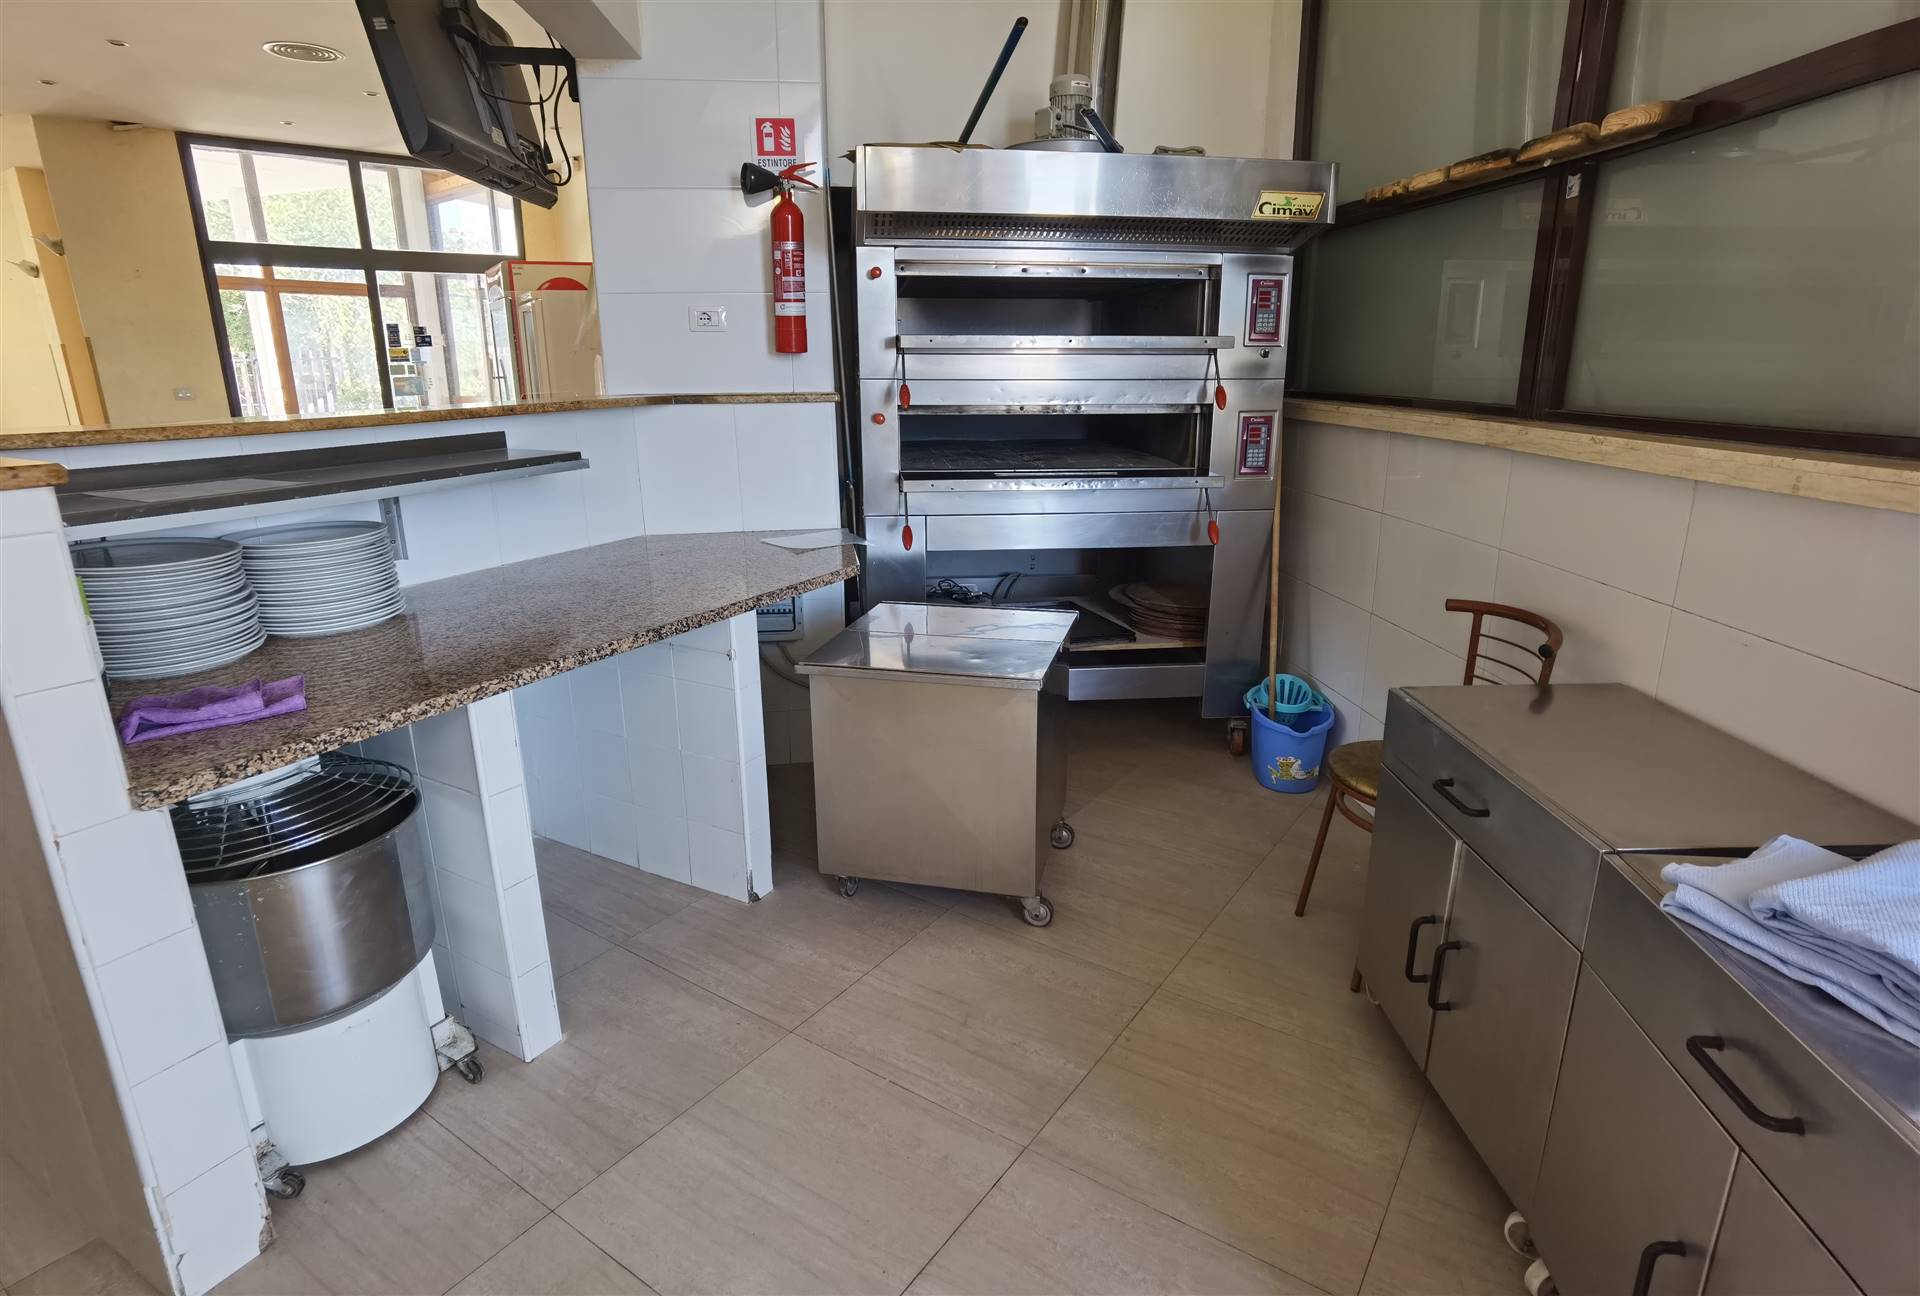 Immobiliare Bertini propone a Santa Marinella, attività di ristorazione-pizzeria. Capienza di circa 70 posti interni e 100 esterni, cucina 